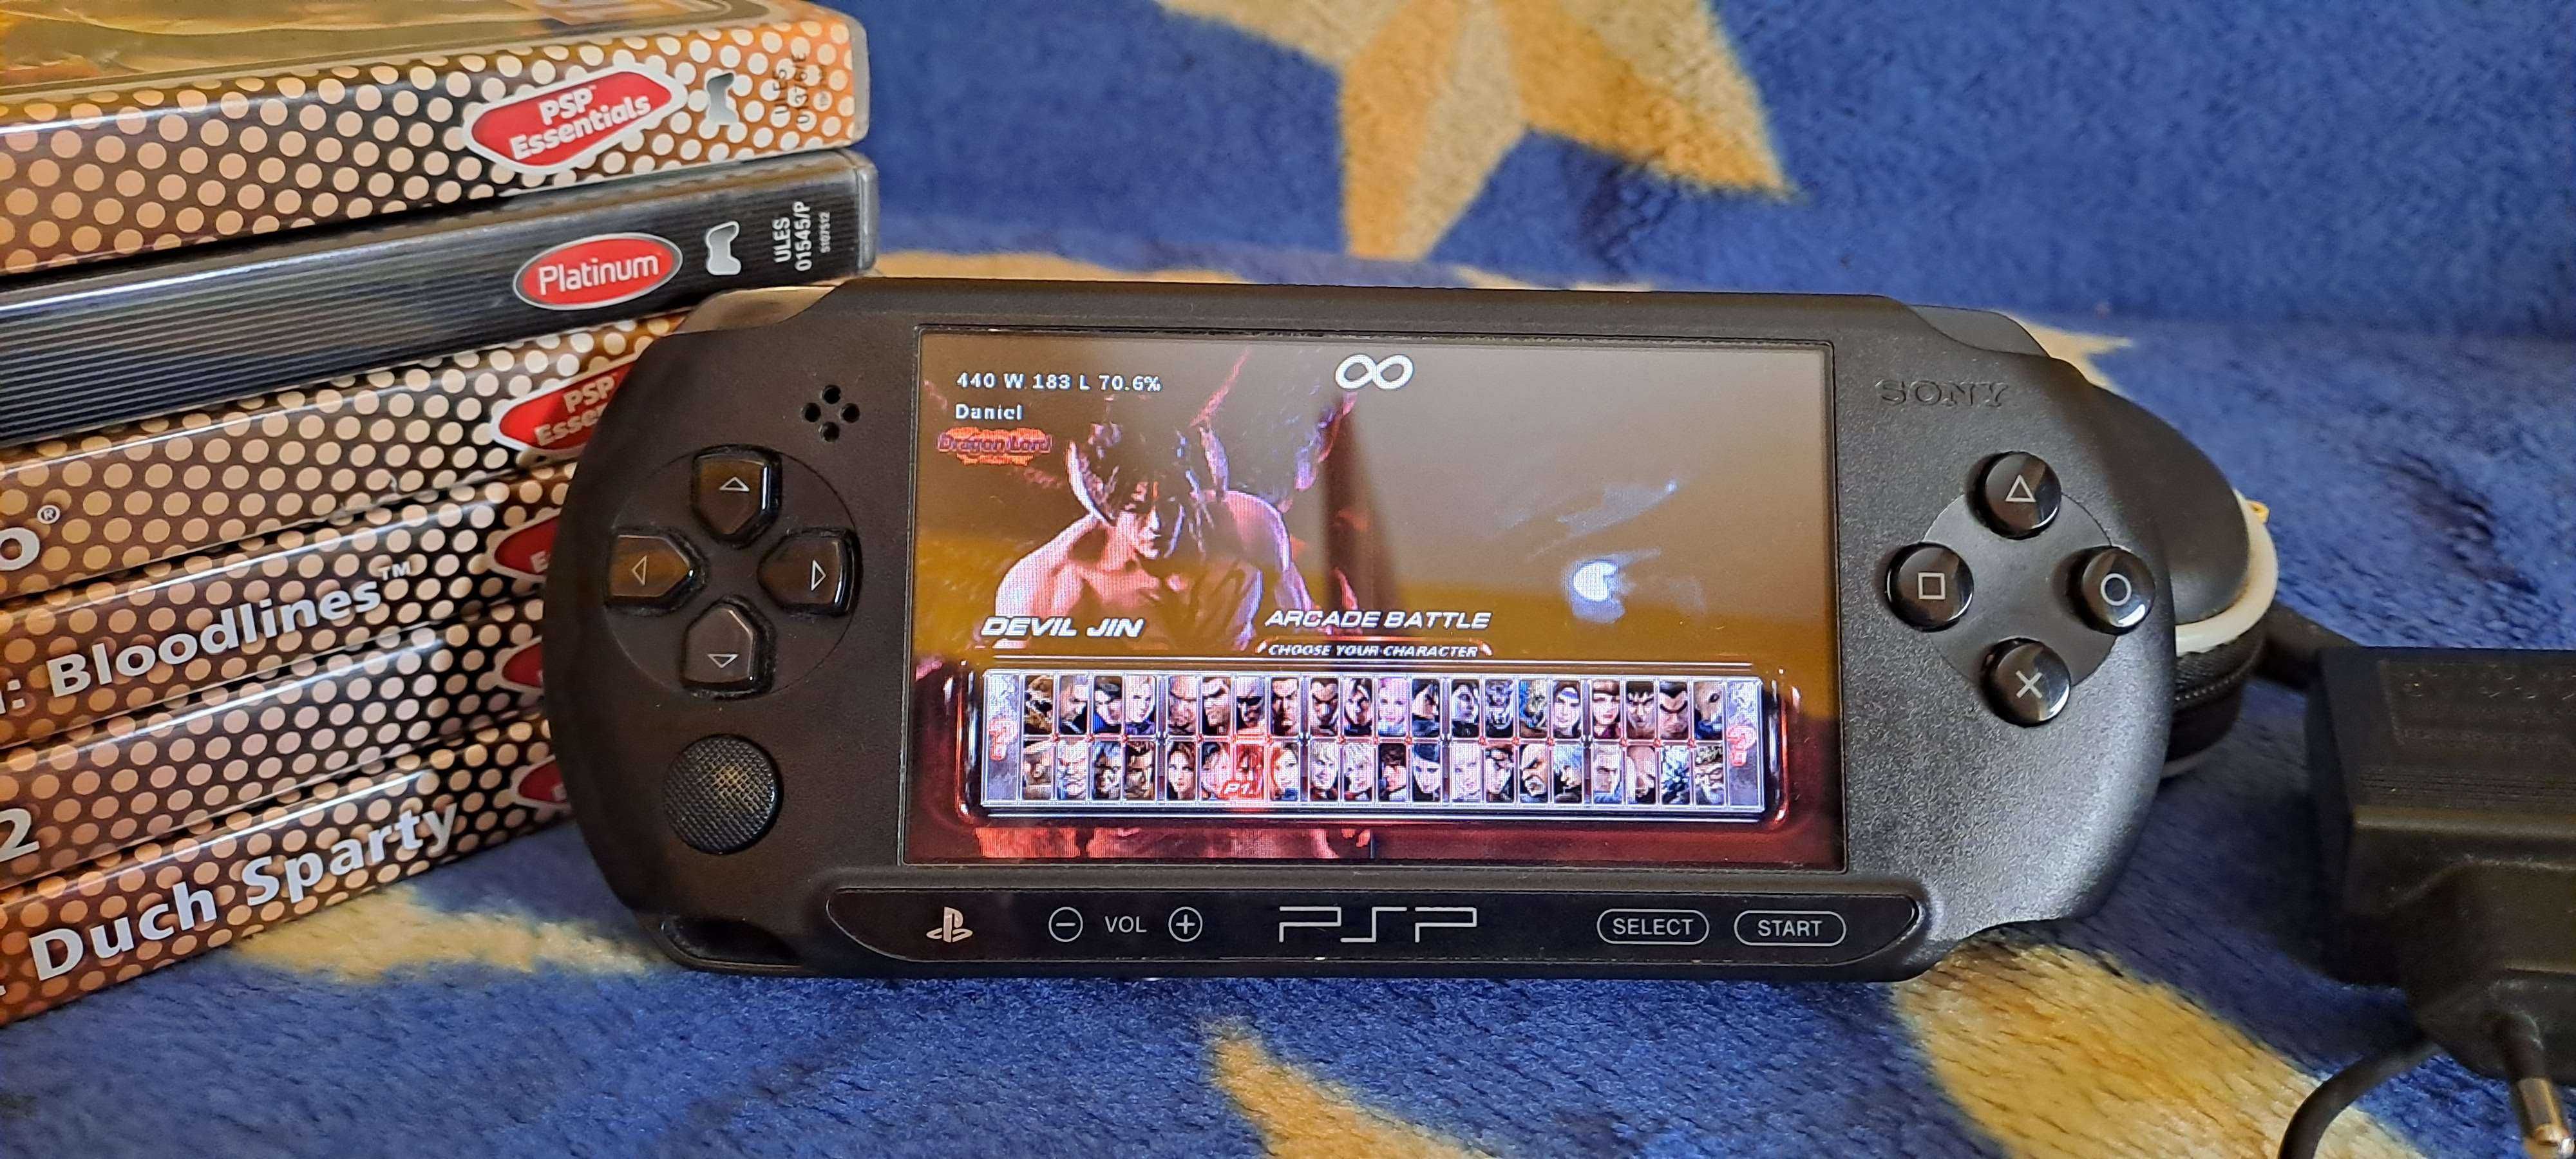 Zestaw - Konsola Sony PSP E1004 + 6 gier/ładowarka/etui/karta pamięci